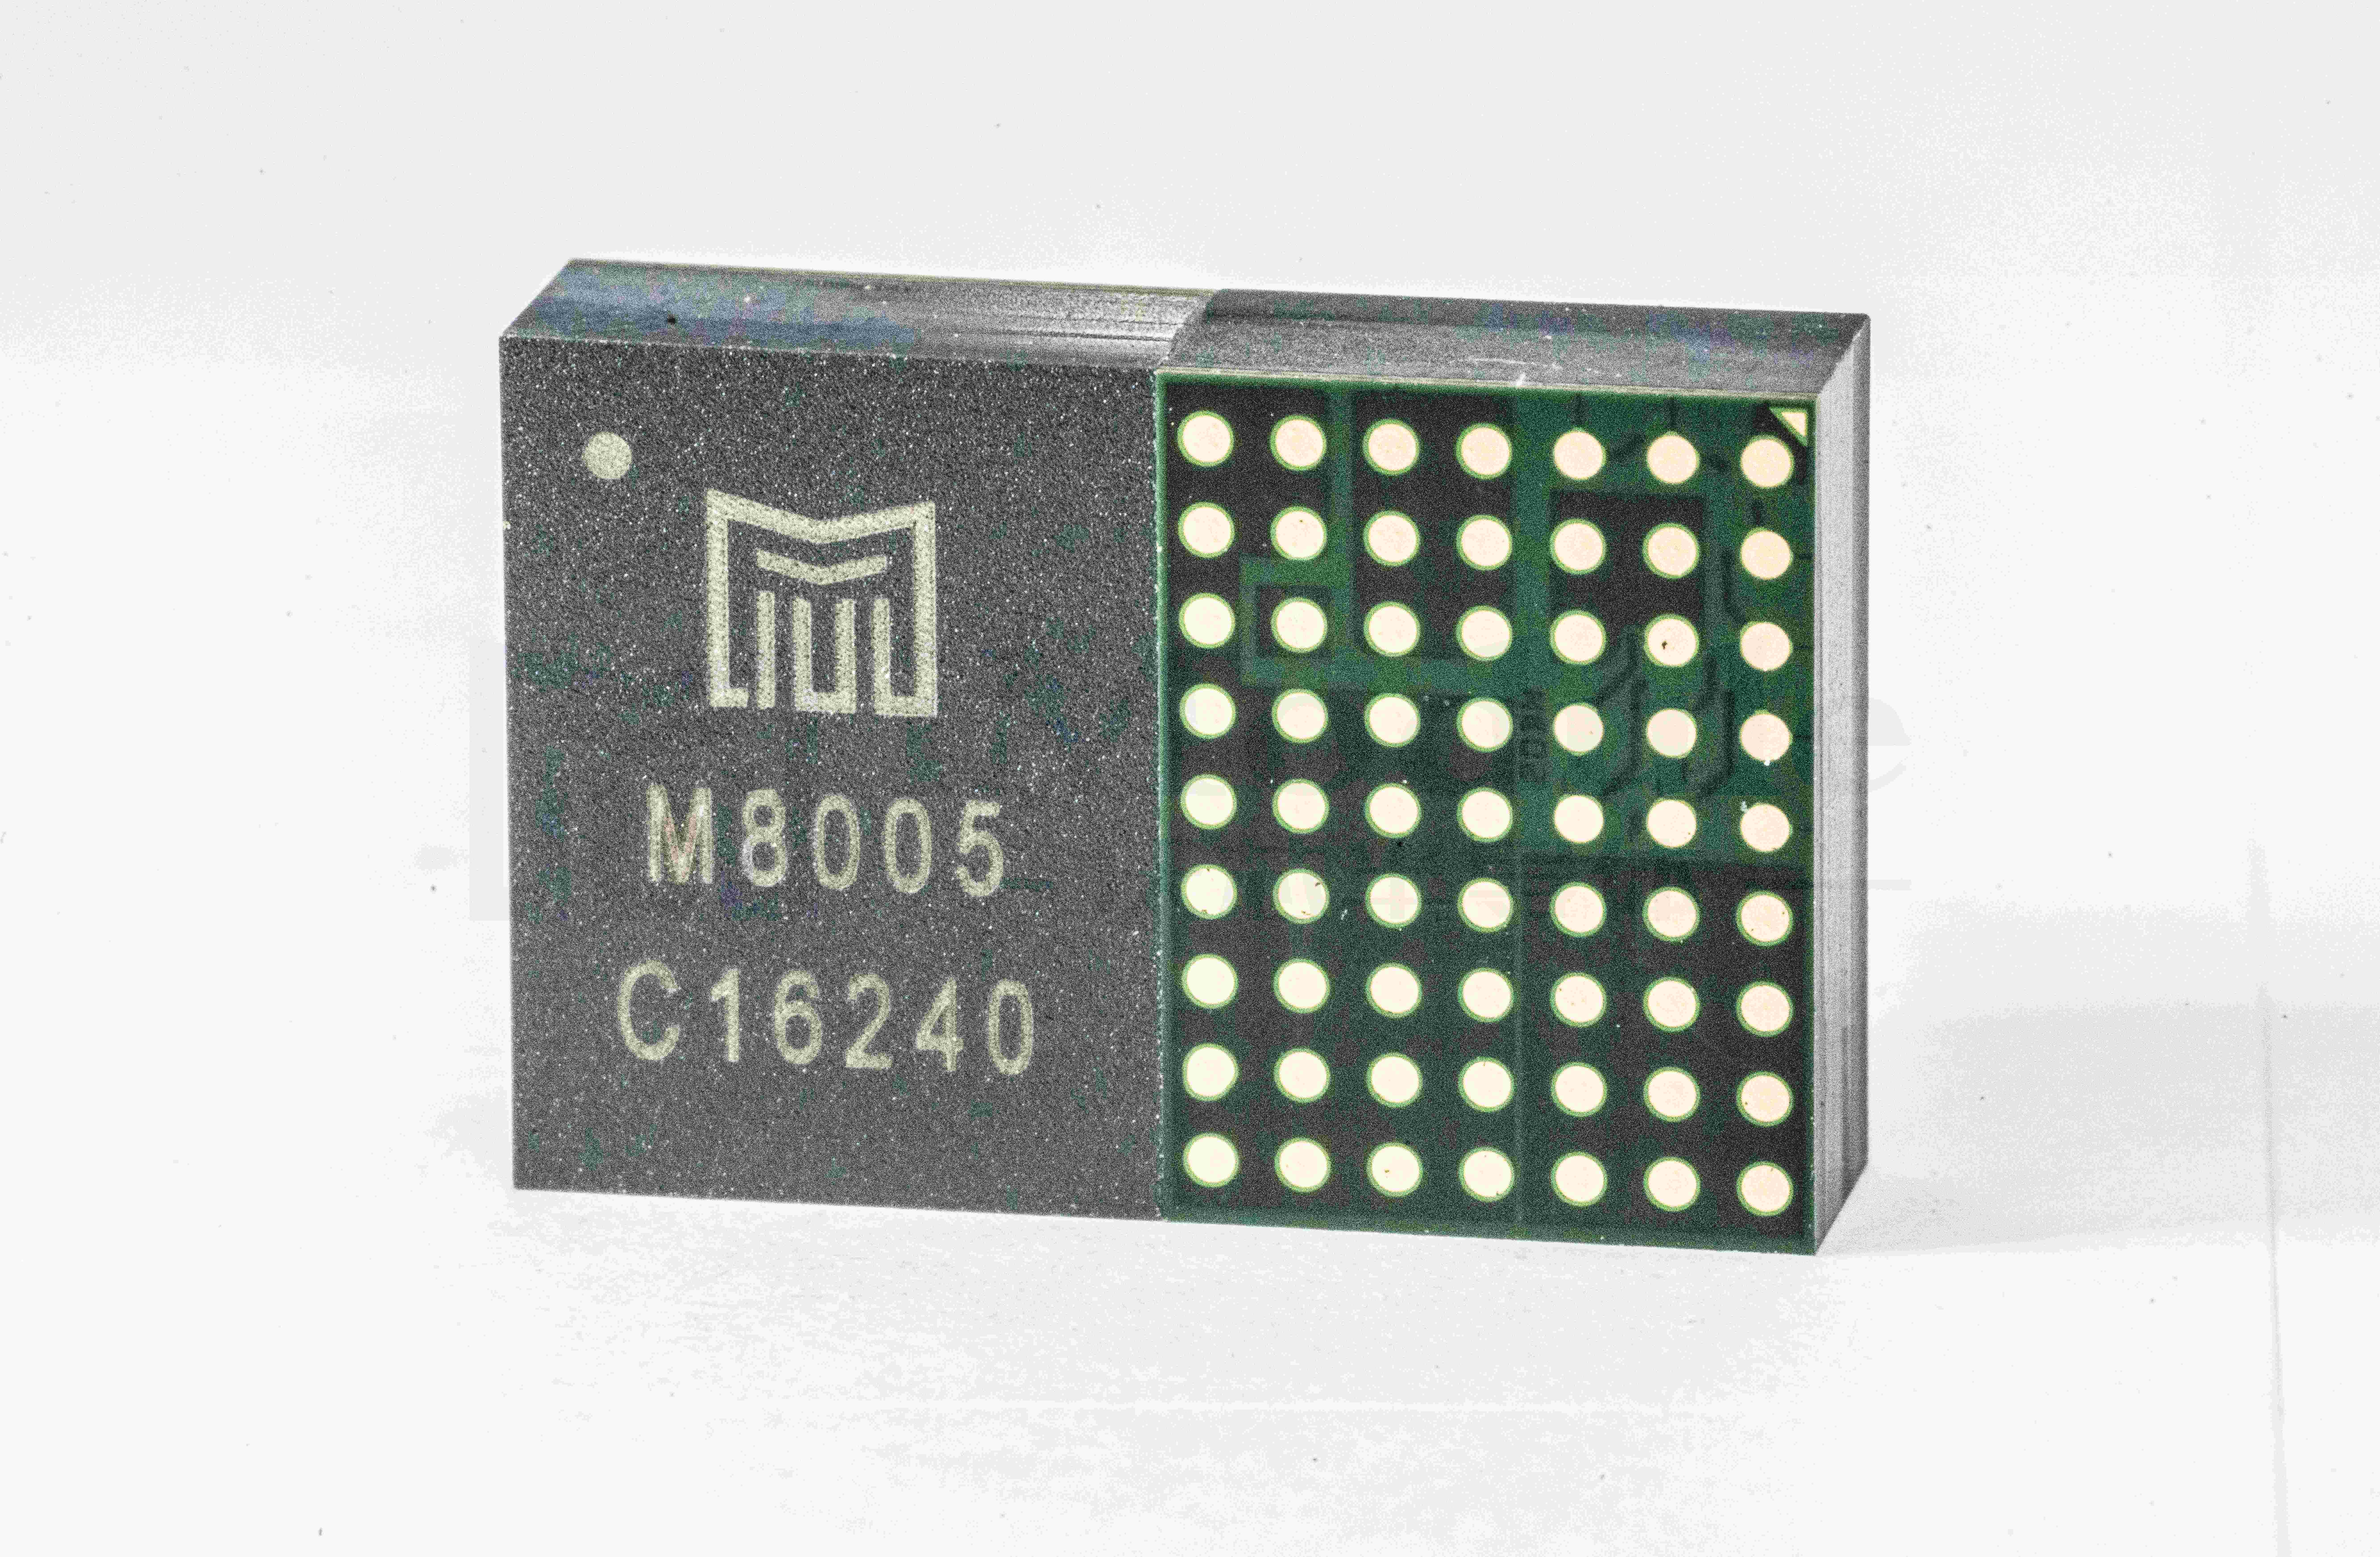 M8005